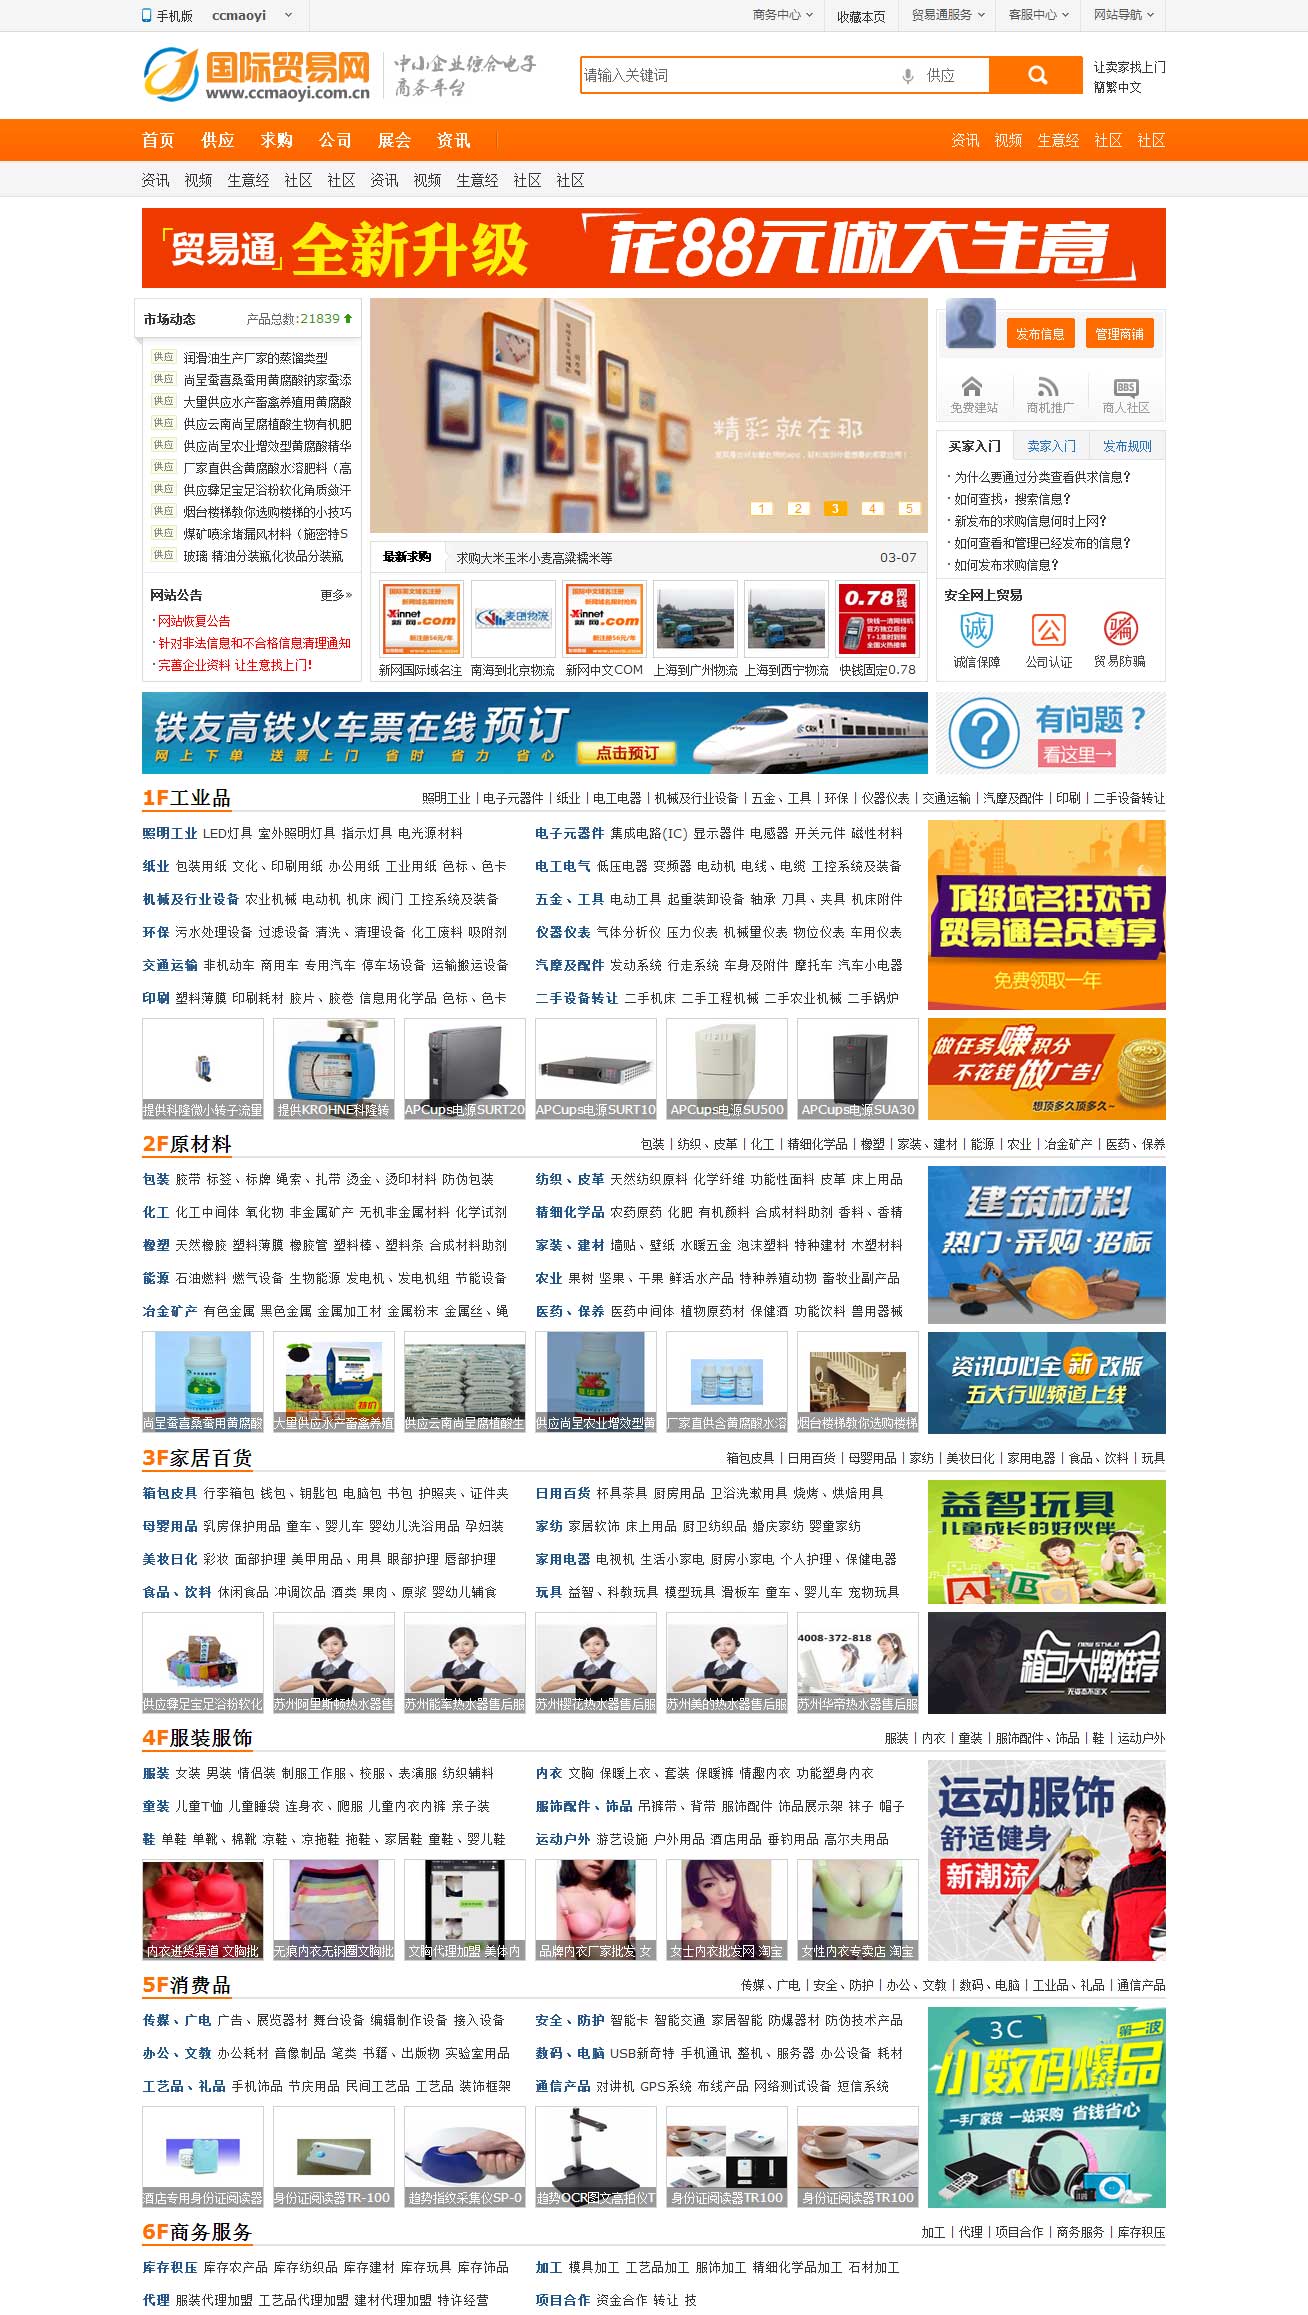 最新Destoon6.0模板《国际贸易网》企业贸易电子商务平台模板